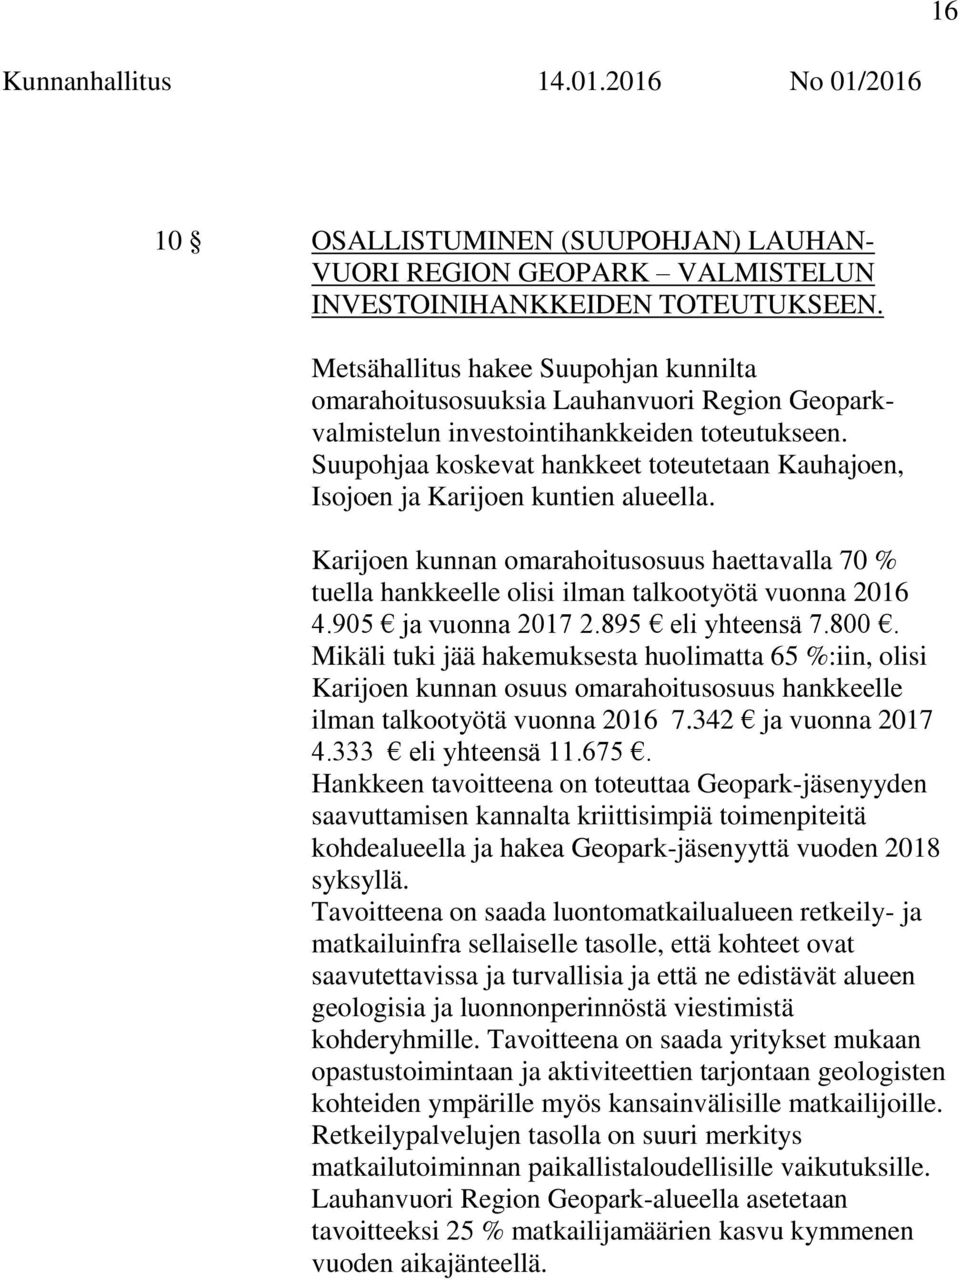 Suupohjaa koskevat hankkeet toteutetaan Kauhajoen, Isojoen ja Karijoen kuntien alueella. Karijoen kunnan omarahoitusosuus haettavalla 70 % tuella hankkeelle olisi ilman talkootyötä vuonna 2016 4.